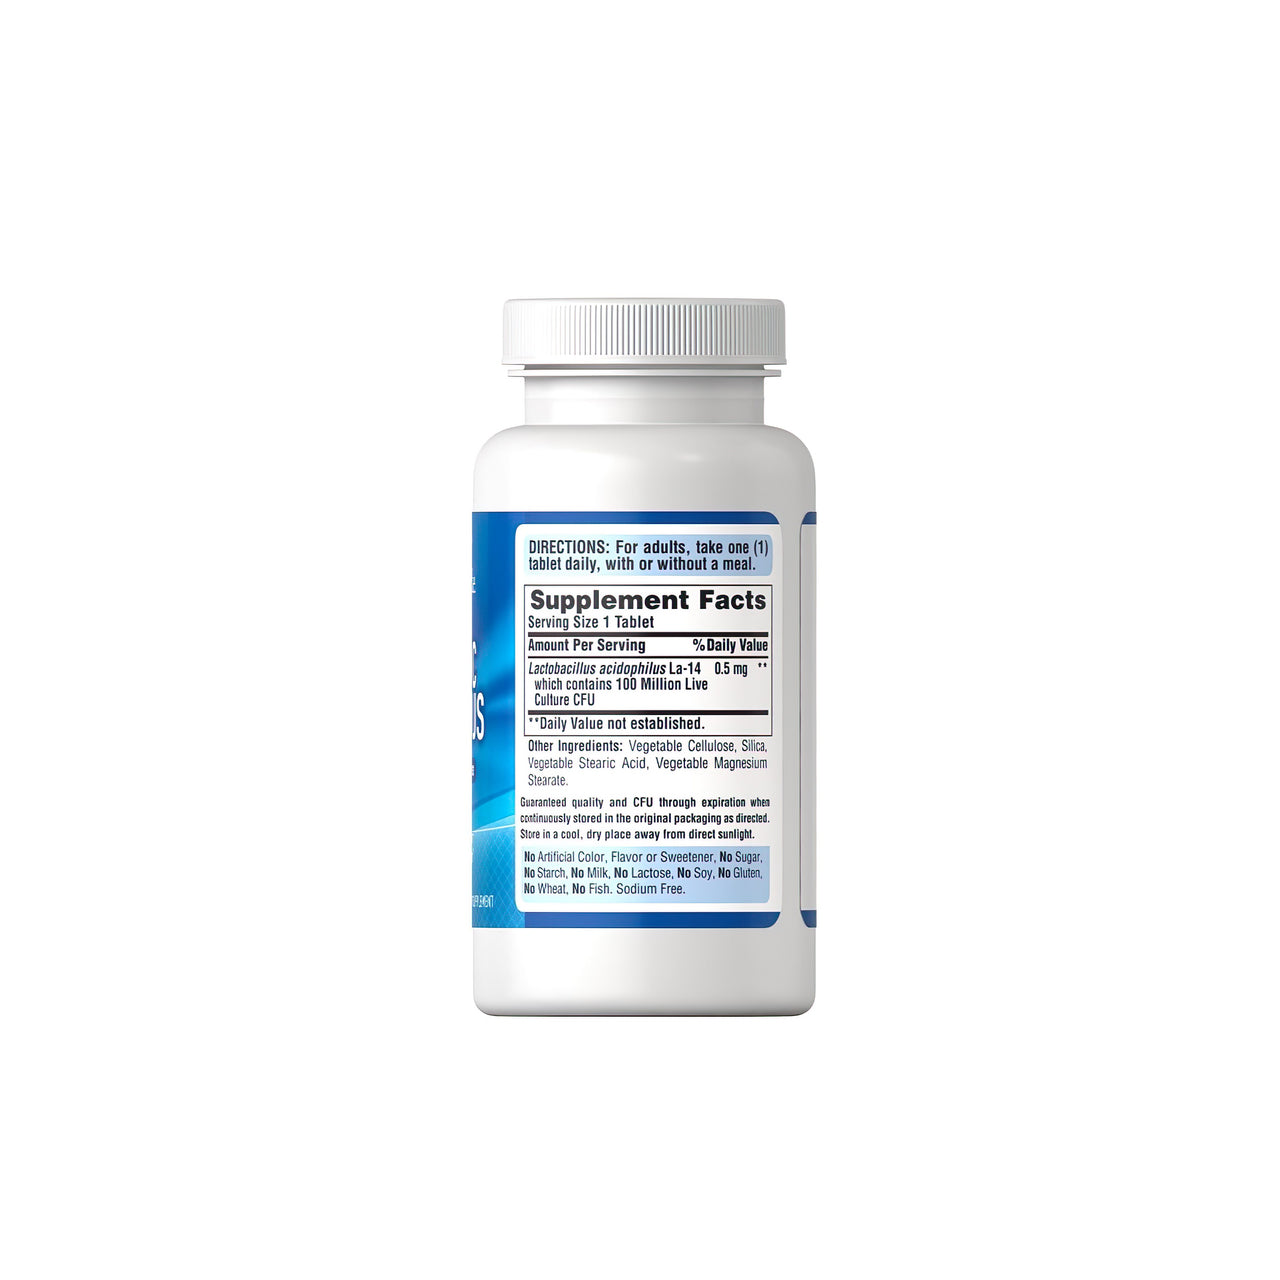 Eine Flasche Probiotic Acidophilus 100 Tabletten von Puritan's Pride, bekannt für seine Vorteile für das Verdauungs- und Immunsystem, auf einem weißen Hintergrund.